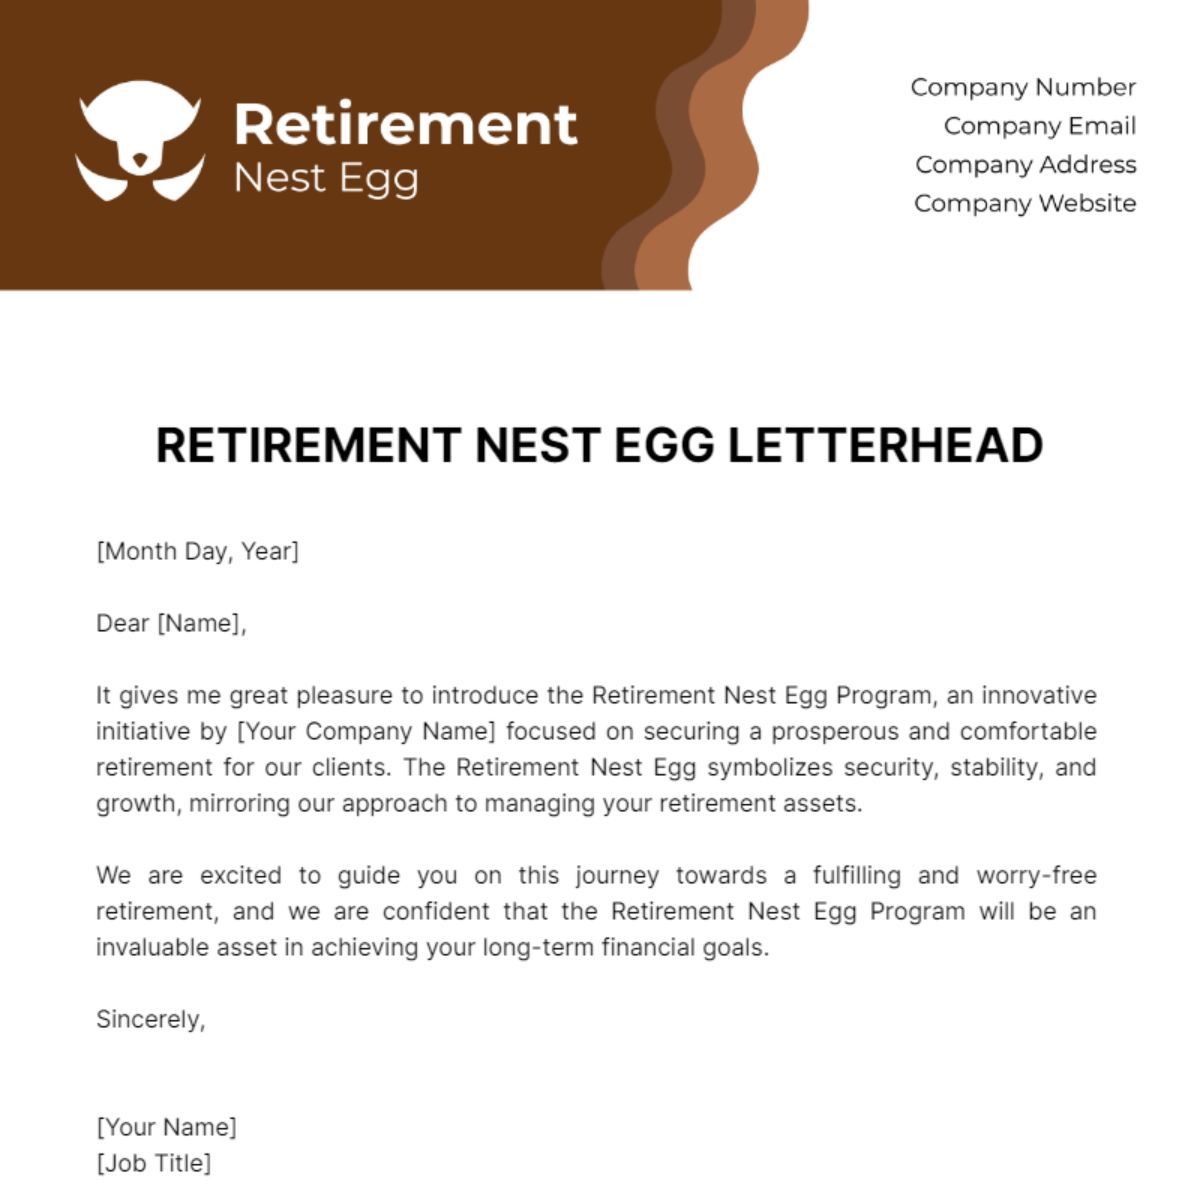 Free Retirement Nest Egg Letterhead Template